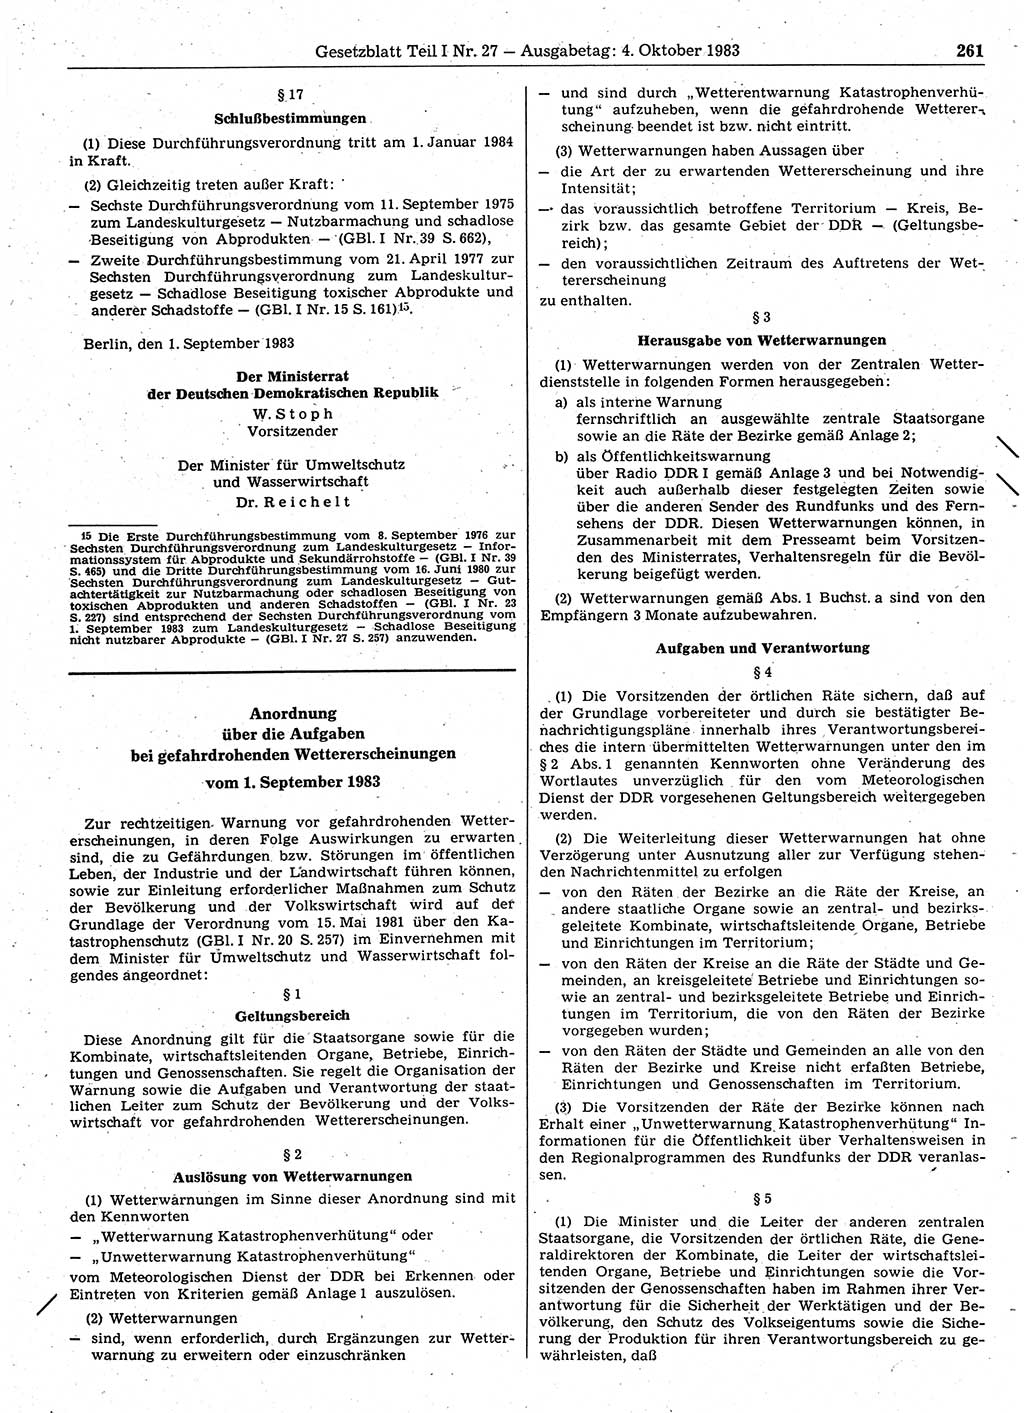 Gesetzblatt (GBl.) der Deutschen Demokratischen Republik (DDR) Teil Ⅰ 1983, Seite 261 (GBl. DDR Ⅰ 1983, S. 261)